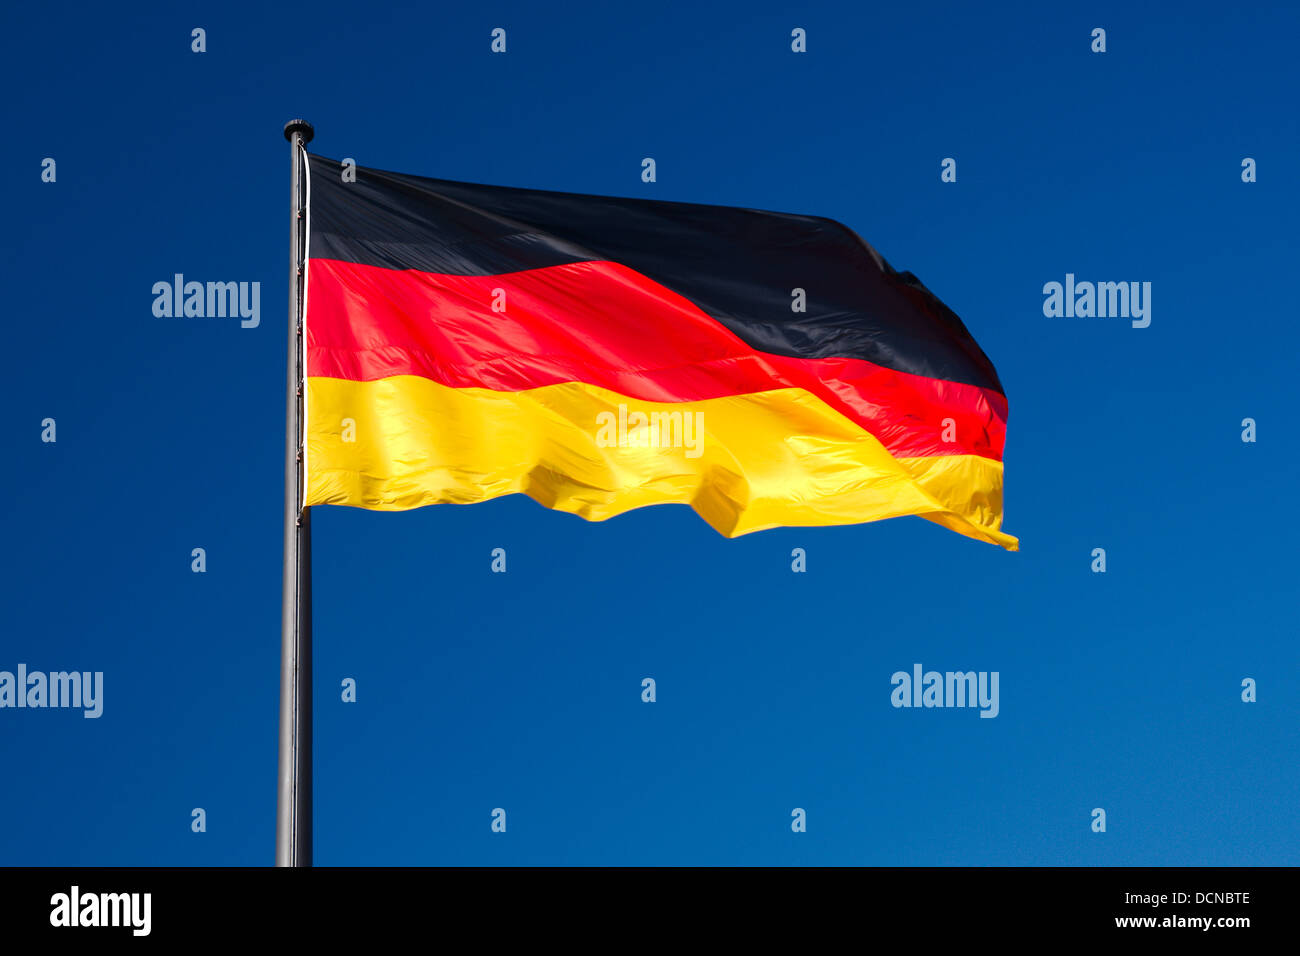 La bandera nacional de Alemania contra el cielo azul como fondo Foto de stock